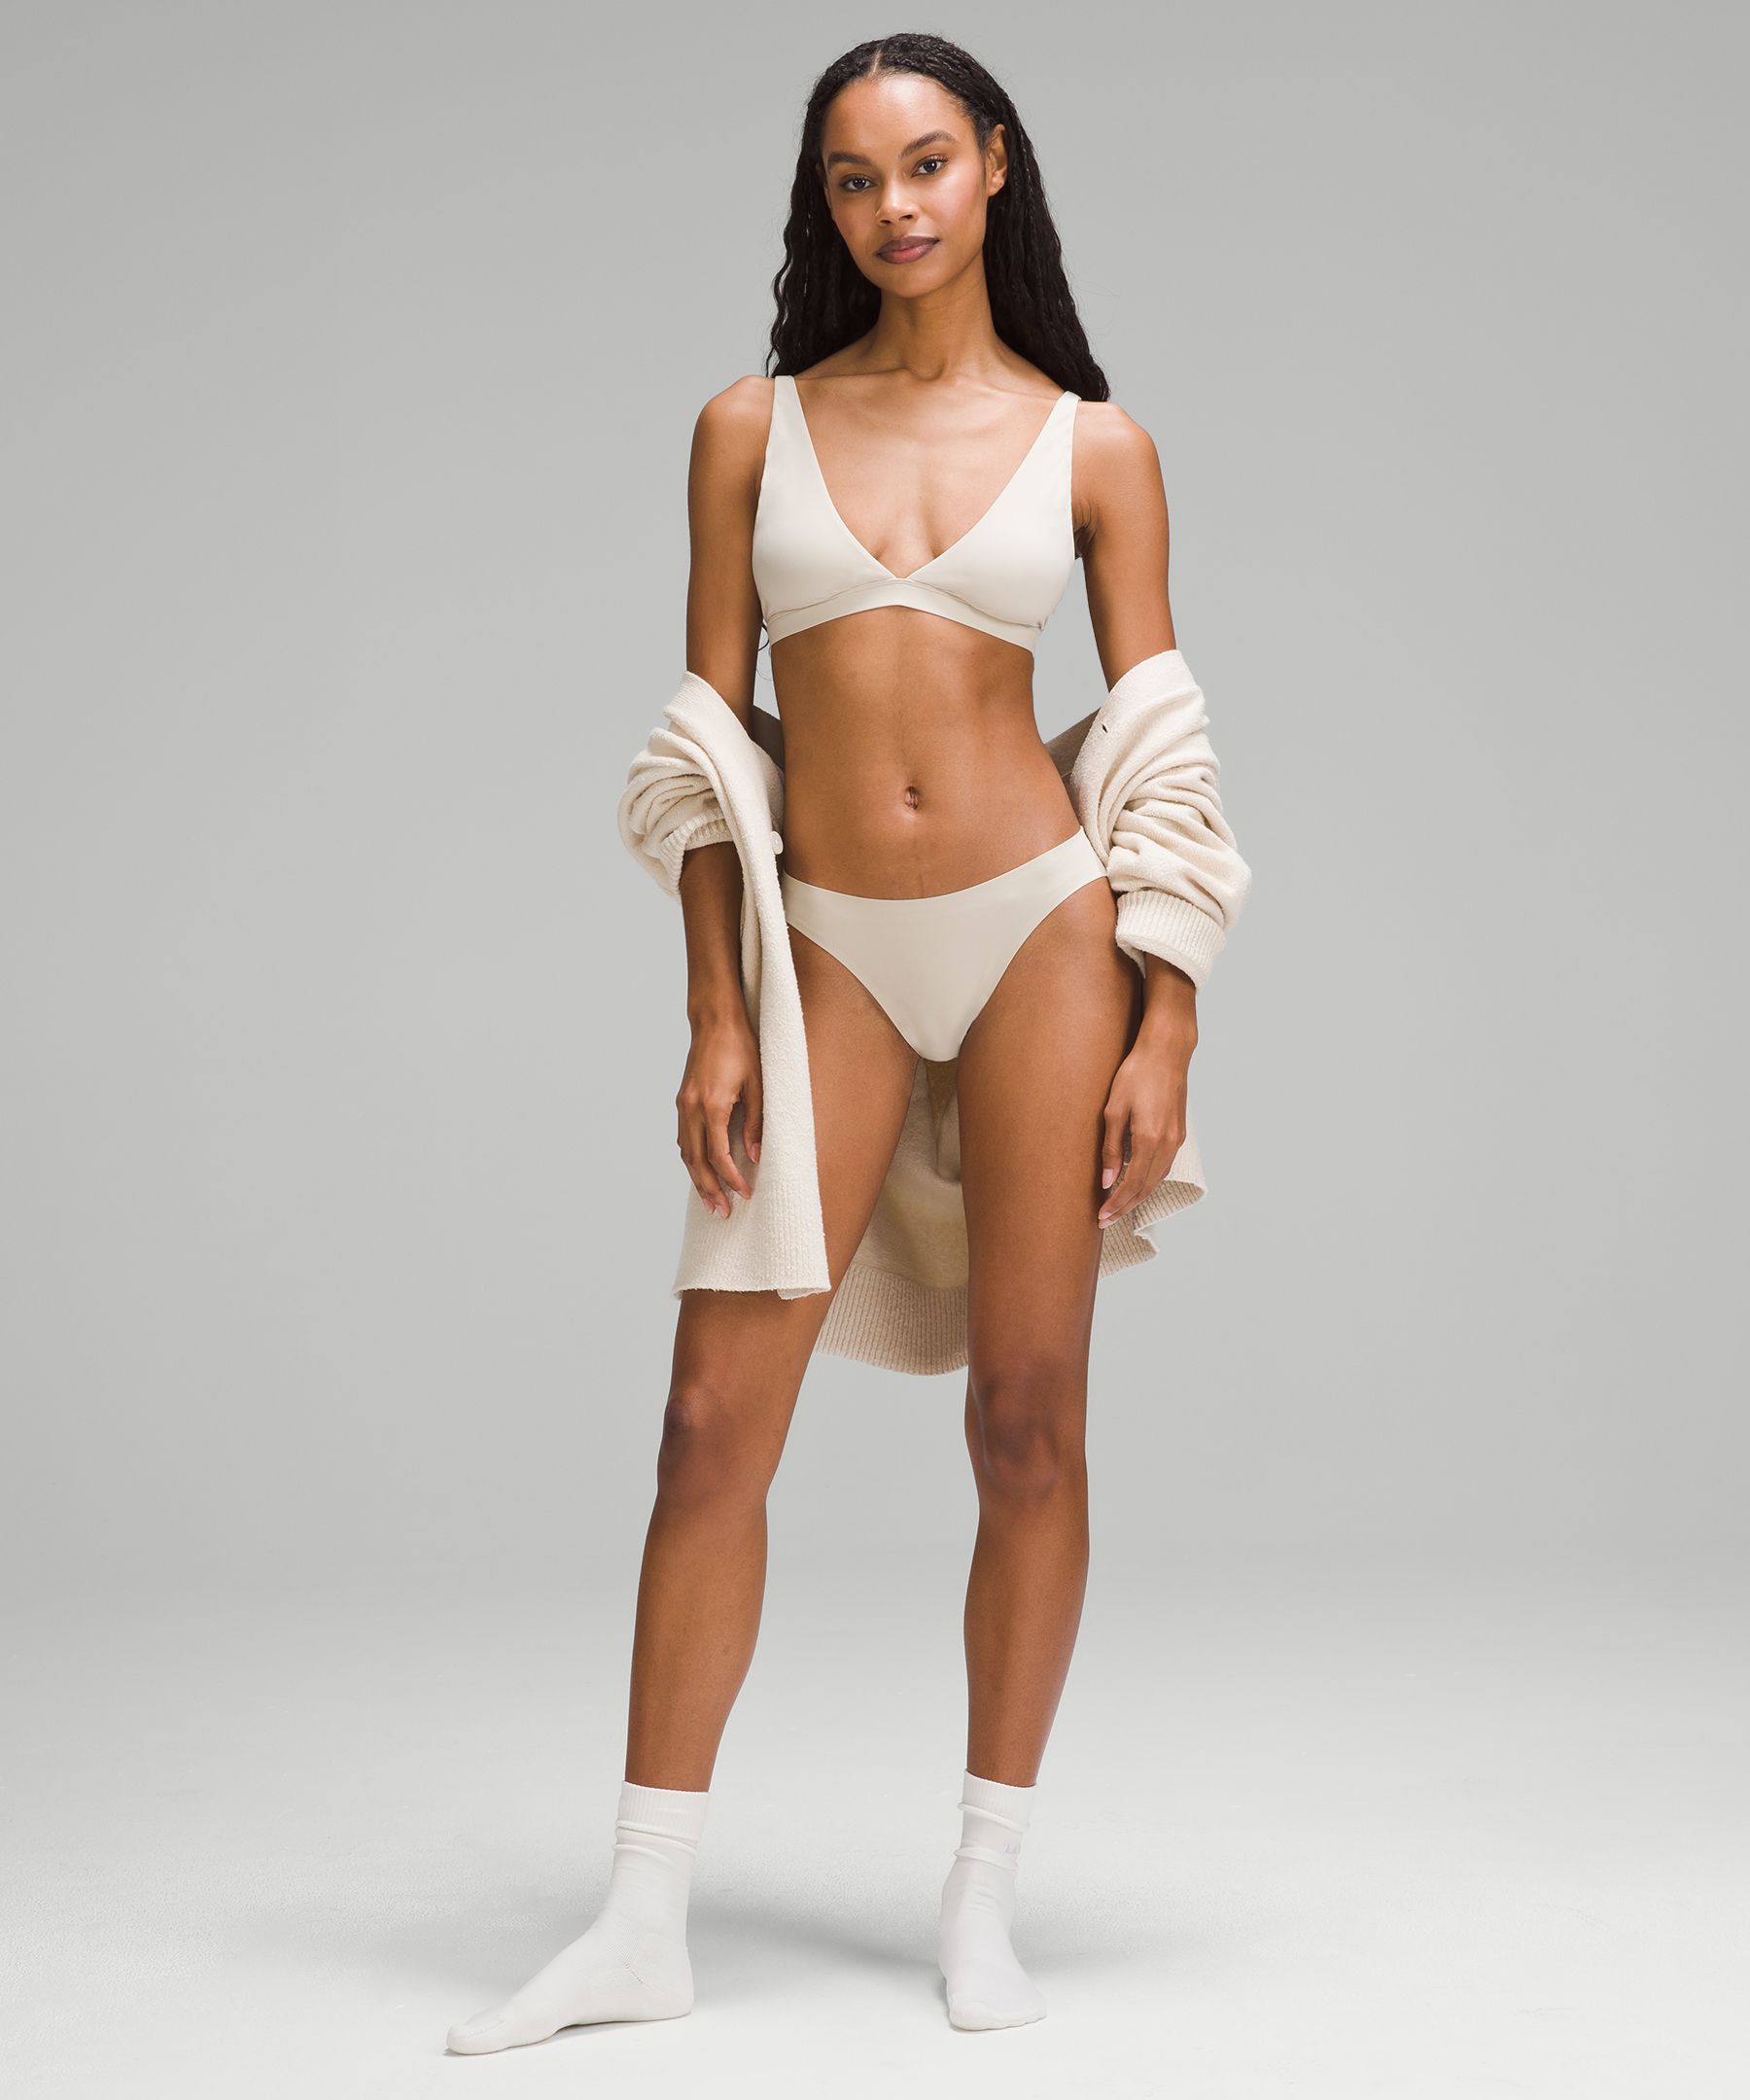 Wundermost Ultra-Soft Nulu Mid-Rise Bikini Underwear | Women's